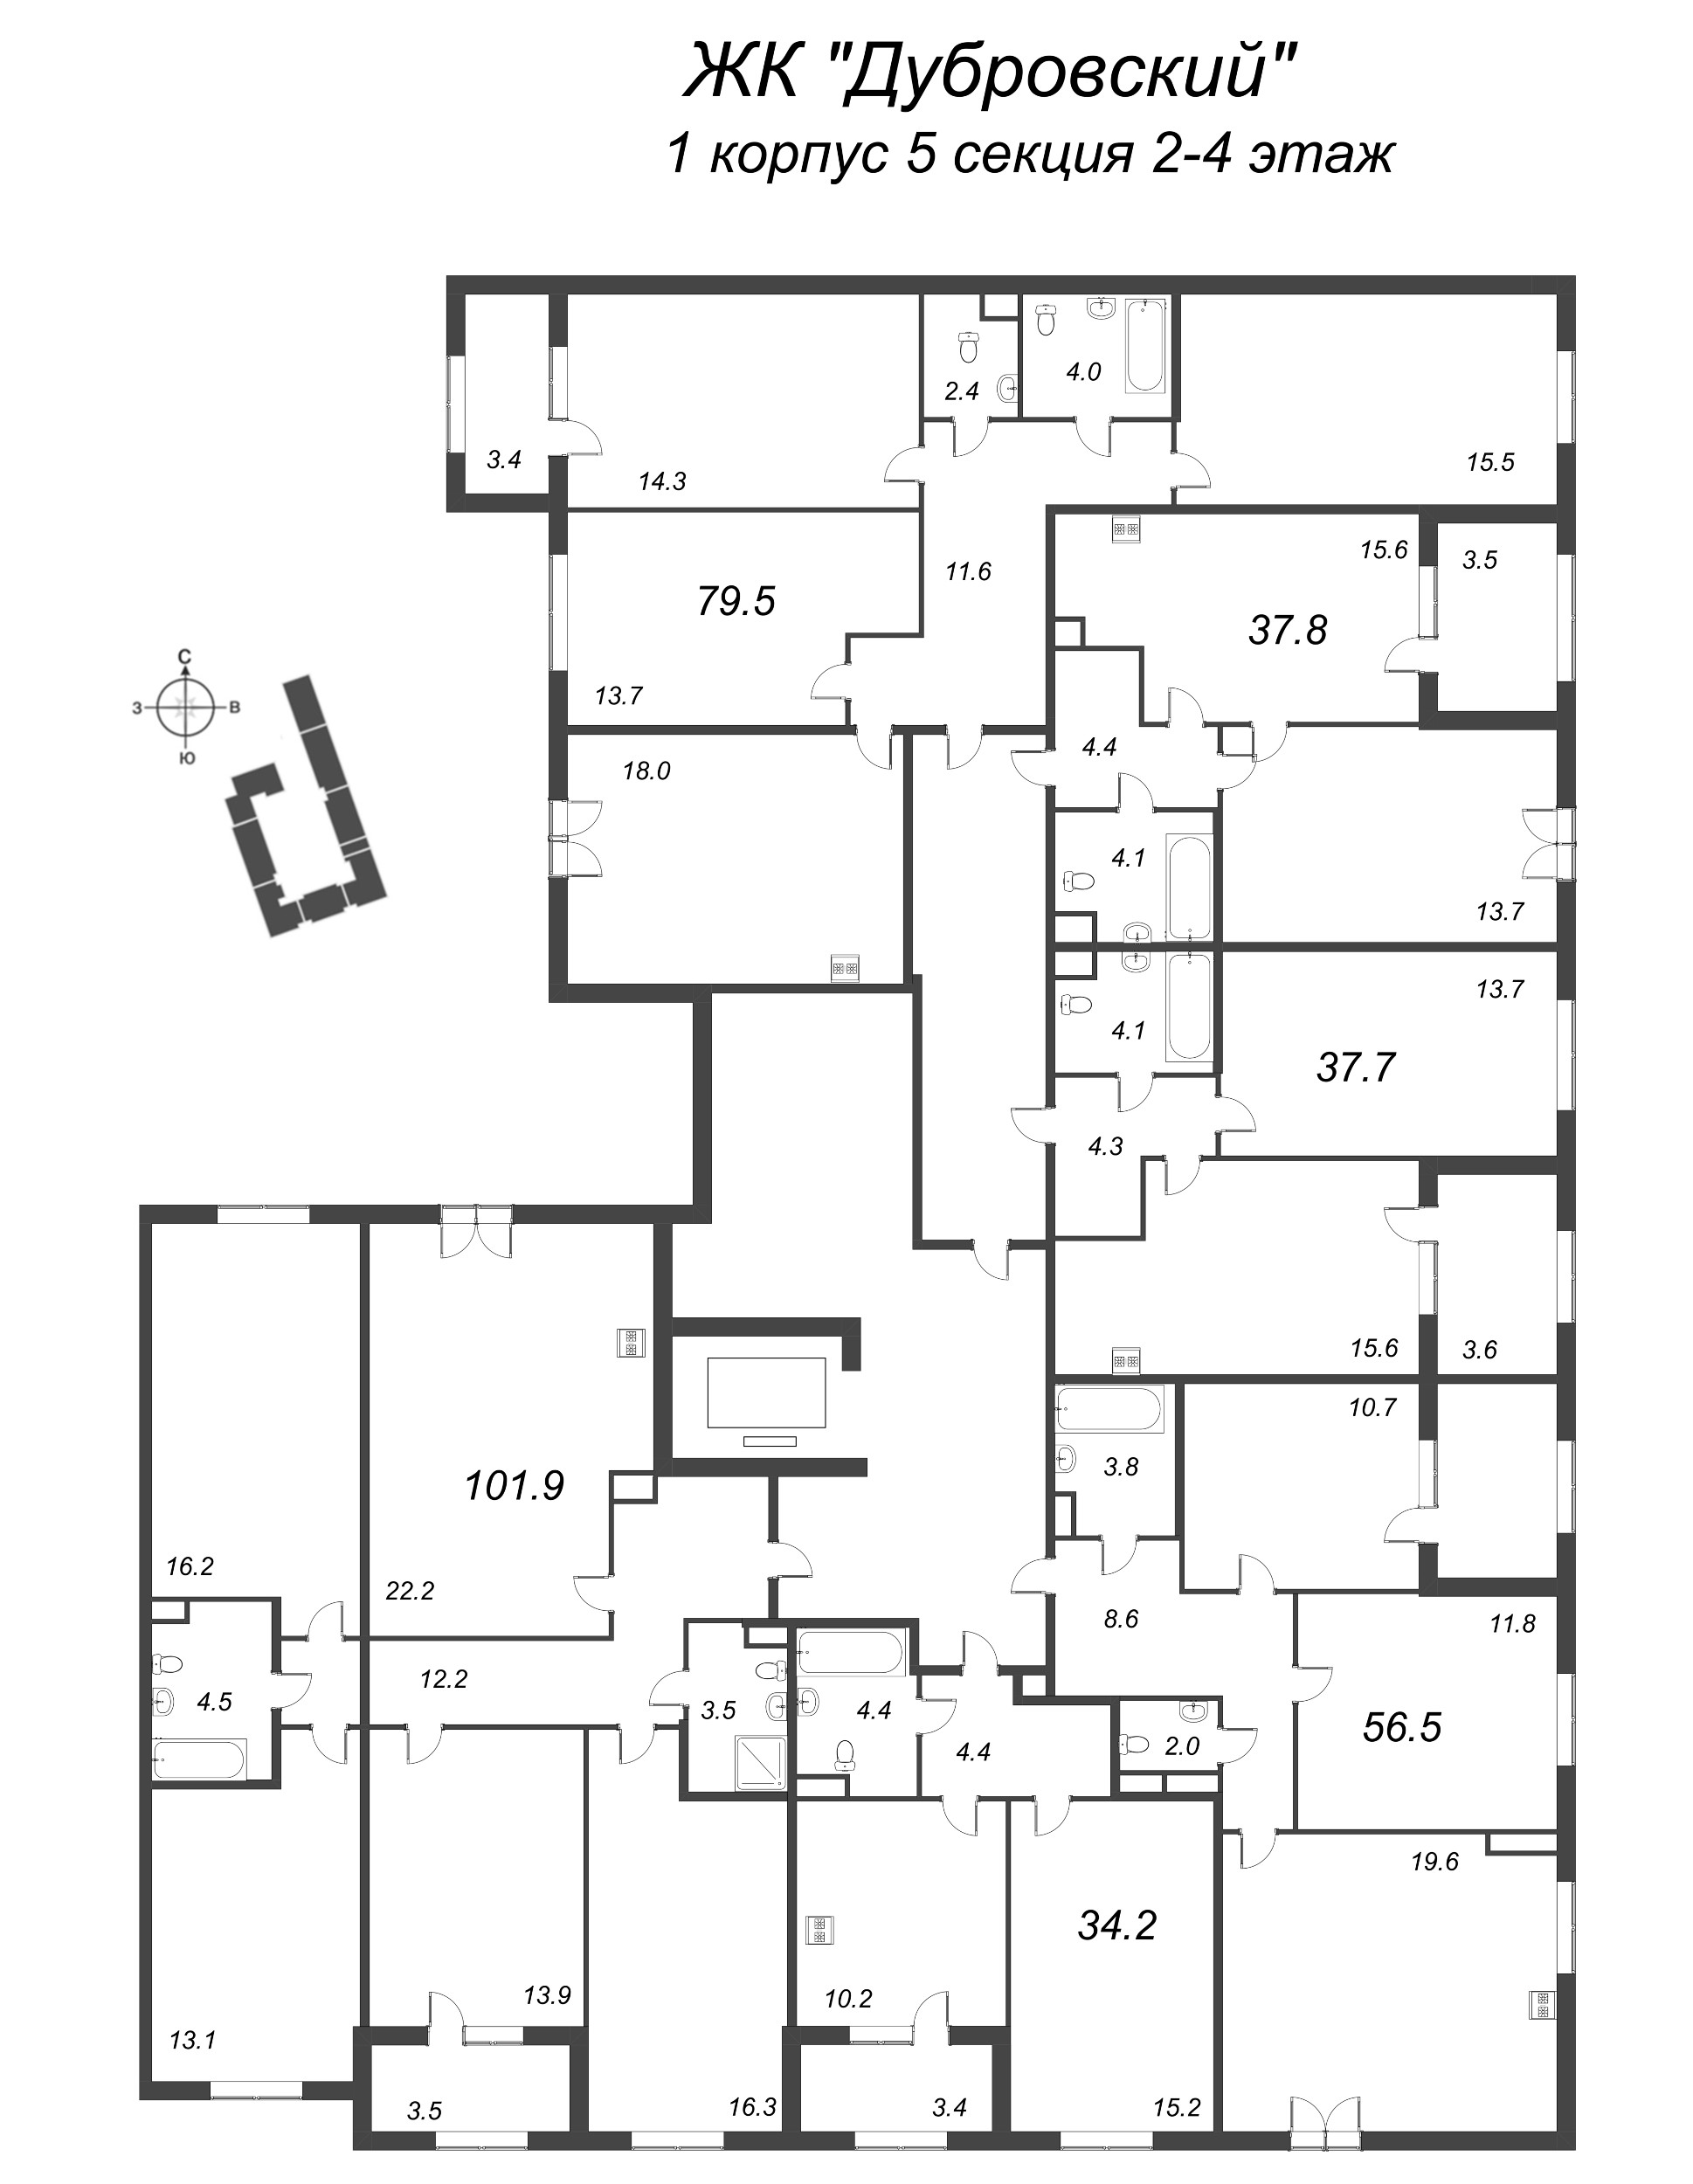 5-комнатная (Евро) квартира, 101.9 м² в ЖК "Дубровский" - планировка этажа